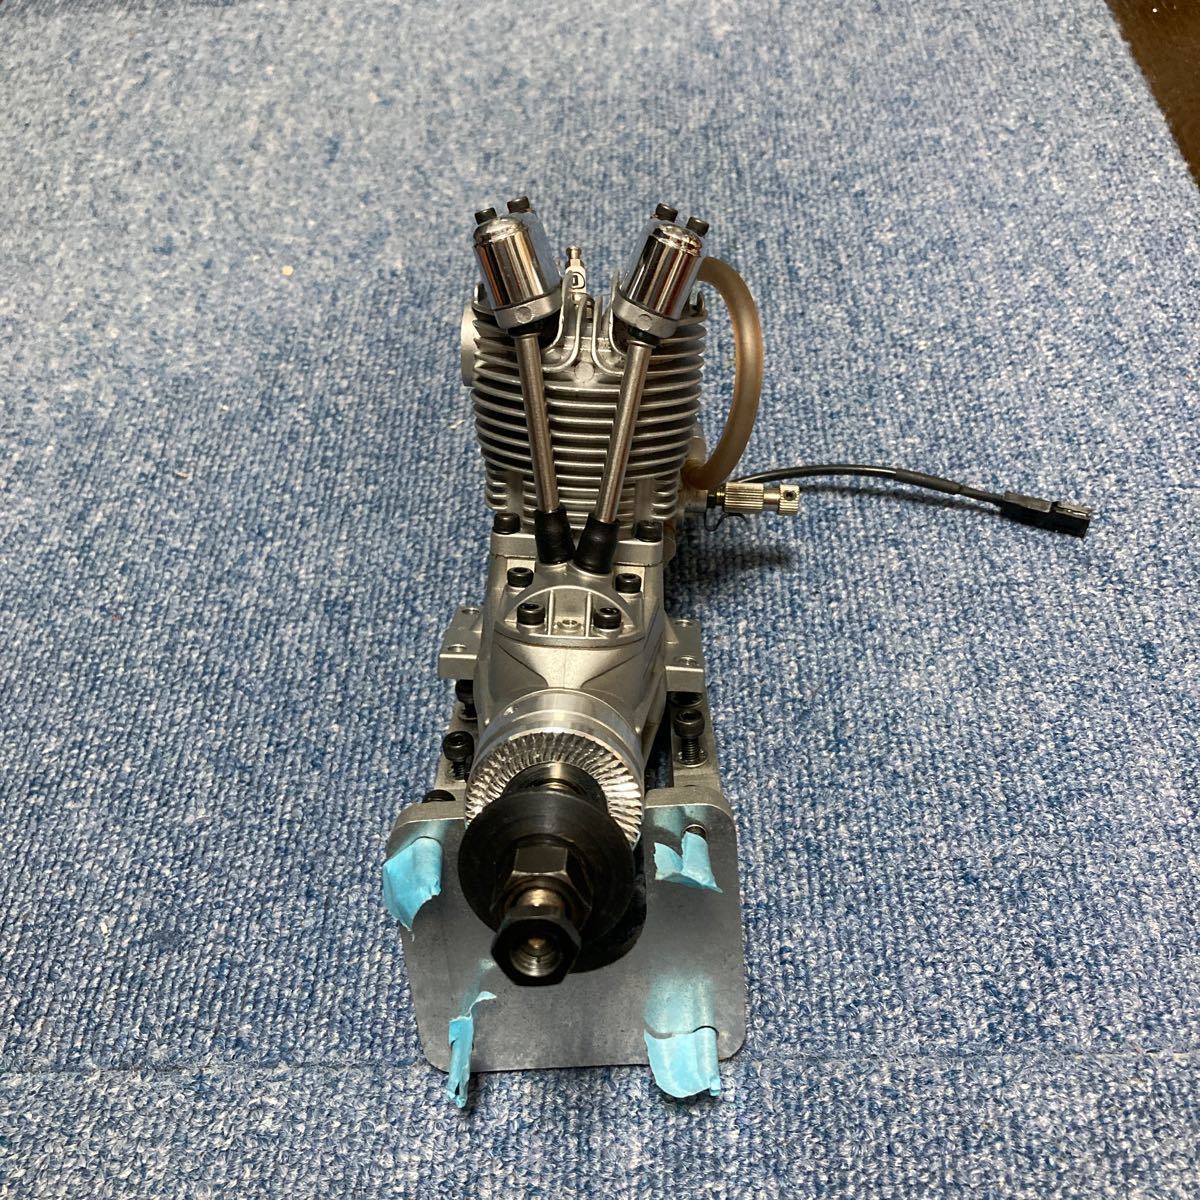 SAITO 4サイクルエンジン